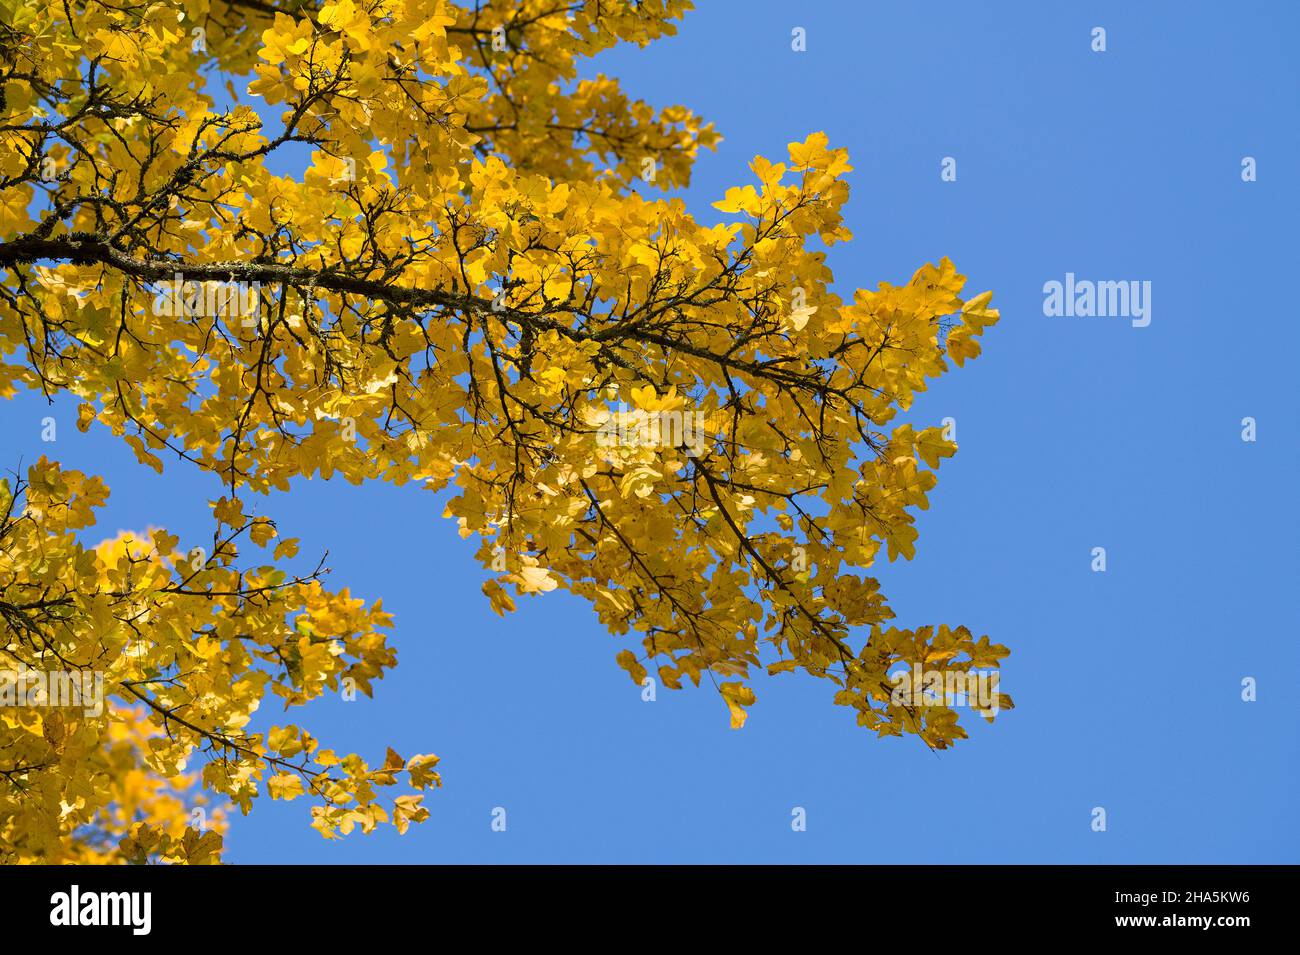 feuilles jaunes de l'érable de champ (acer campestre) contre un ciel bleu, couleurs d'automne, lumière du jour, allemagne Banque D'Images